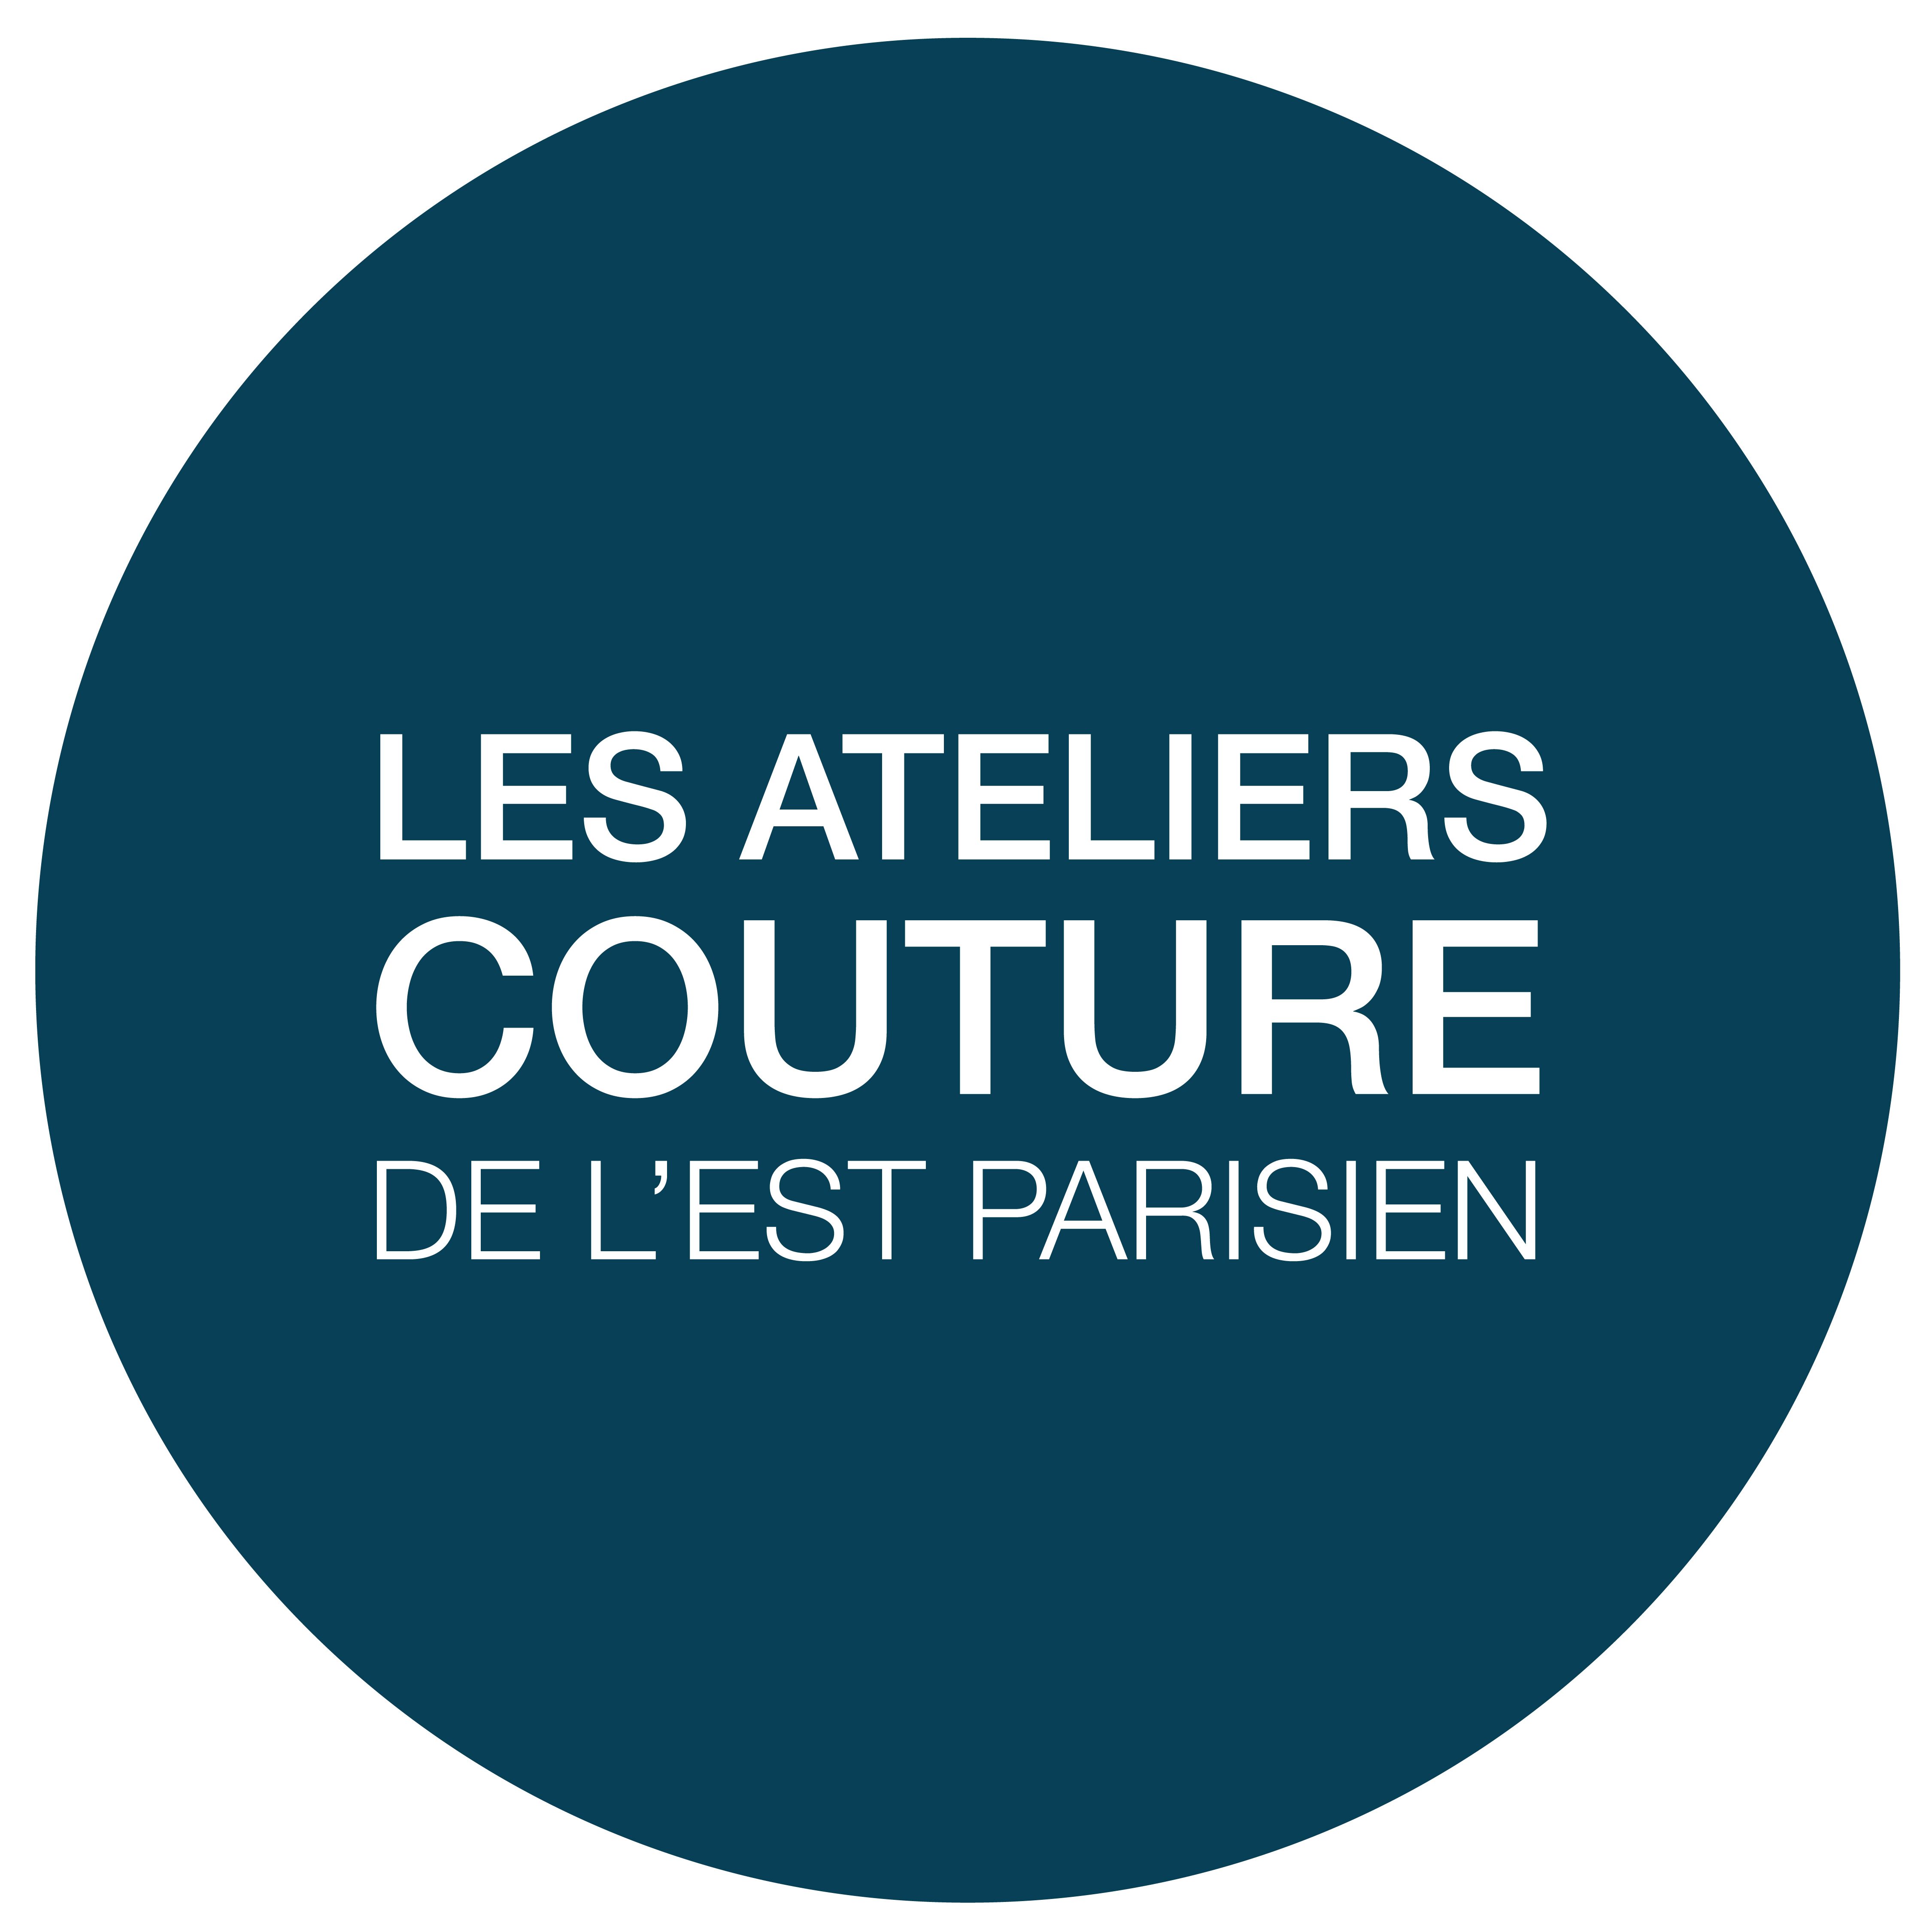  Les Ateliers Couture de l'Est Parisien